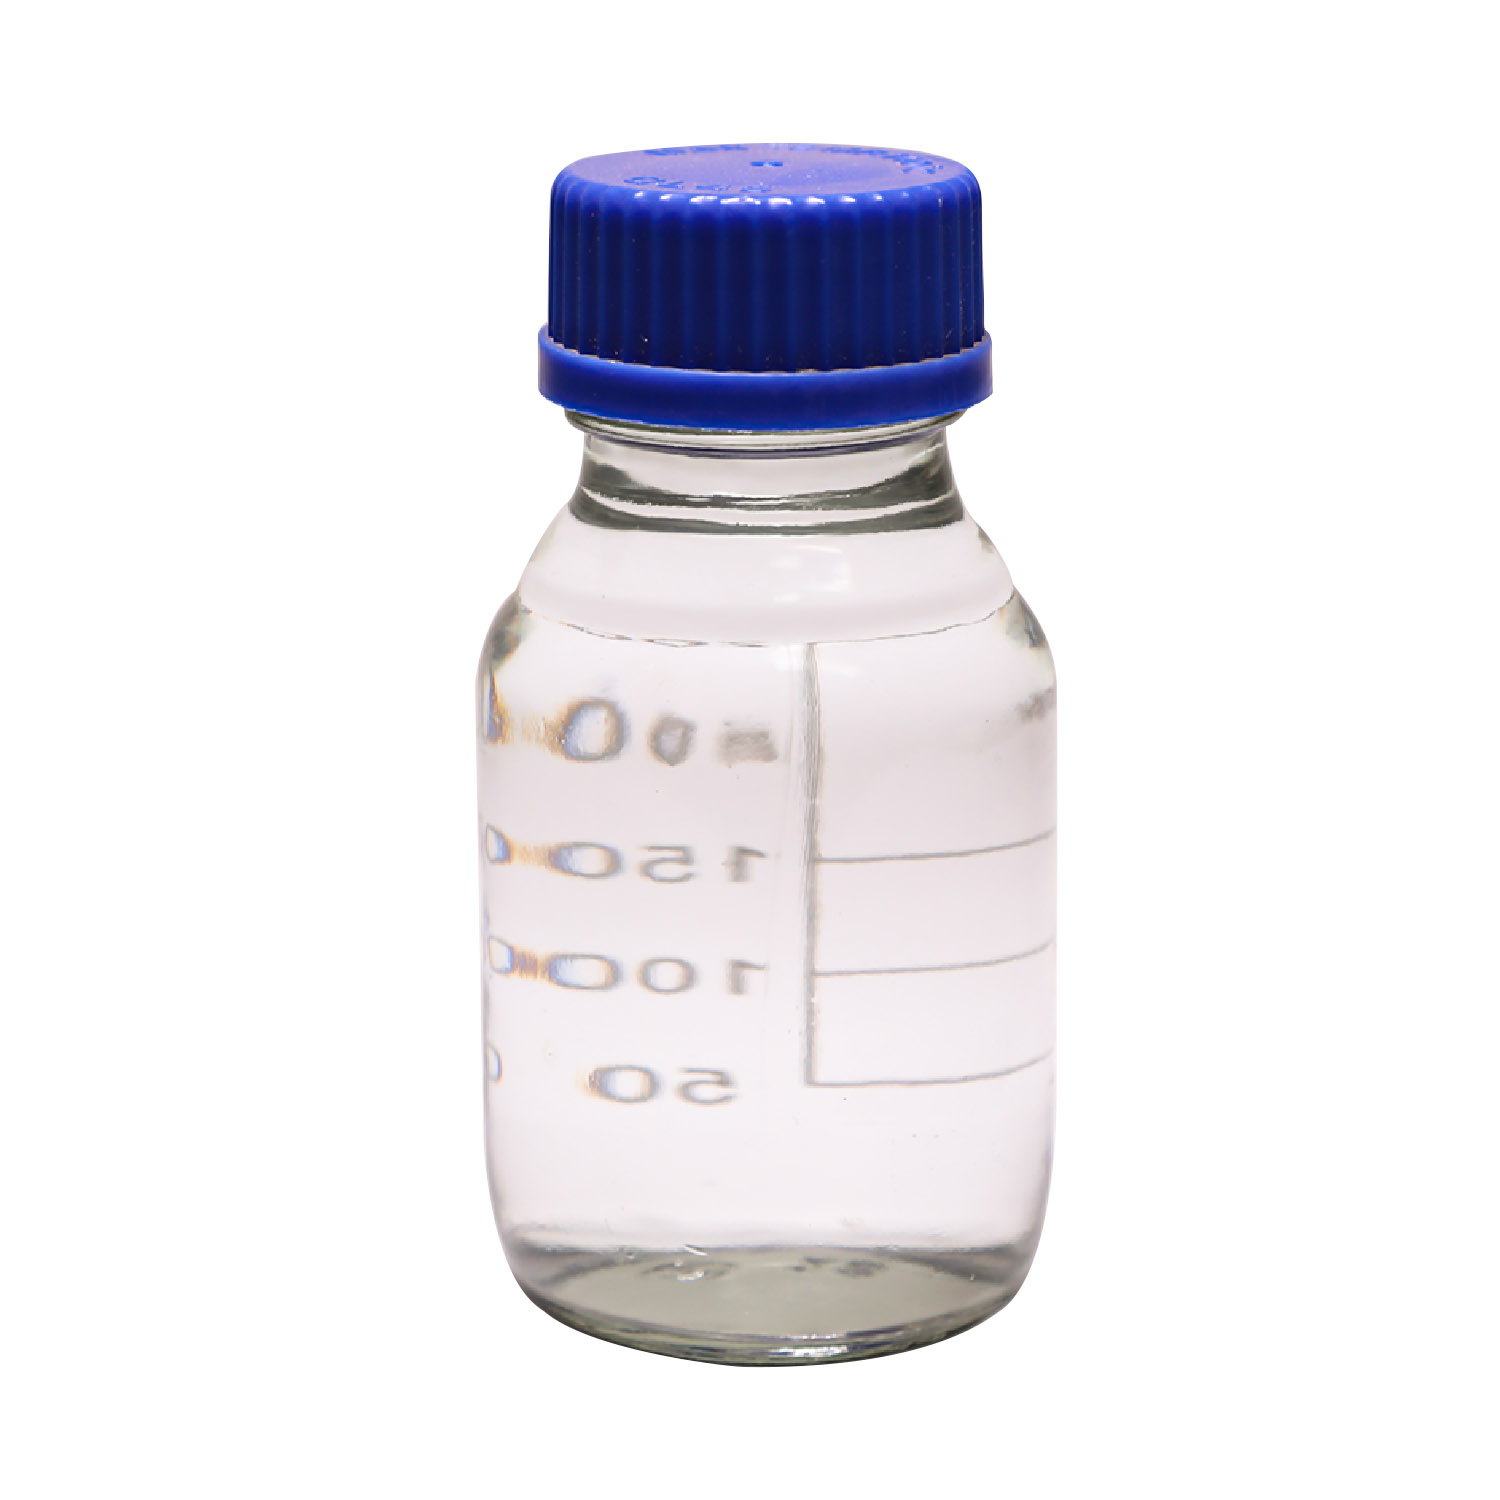 Comprar Retardante de llama BDP Bisfenol-A Bis (fosfato de difenilo) Cas5945-33-5, Retardante de llama BDP Bisfenol-A Bis (fosfato de difenilo) Cas5945-33-5 Precios, Retardante de llama BDP Bisfenol-A Bis (fosfato de difenilo) Cas5945-33-5 Marcas, Retardante de llama BDP Bisfenol-A Bis (fosfato de difenilo) Cas5945-33-5 Fabricante, Retardante de llama BDP Bisfenol-A Bis (fosfato de difenilo) Cas5945-33-5 Citas, Retardante de llama BDP Bisfenol-A Bis (fosfato de difenilo) Cas5945-33-5 Empresa.